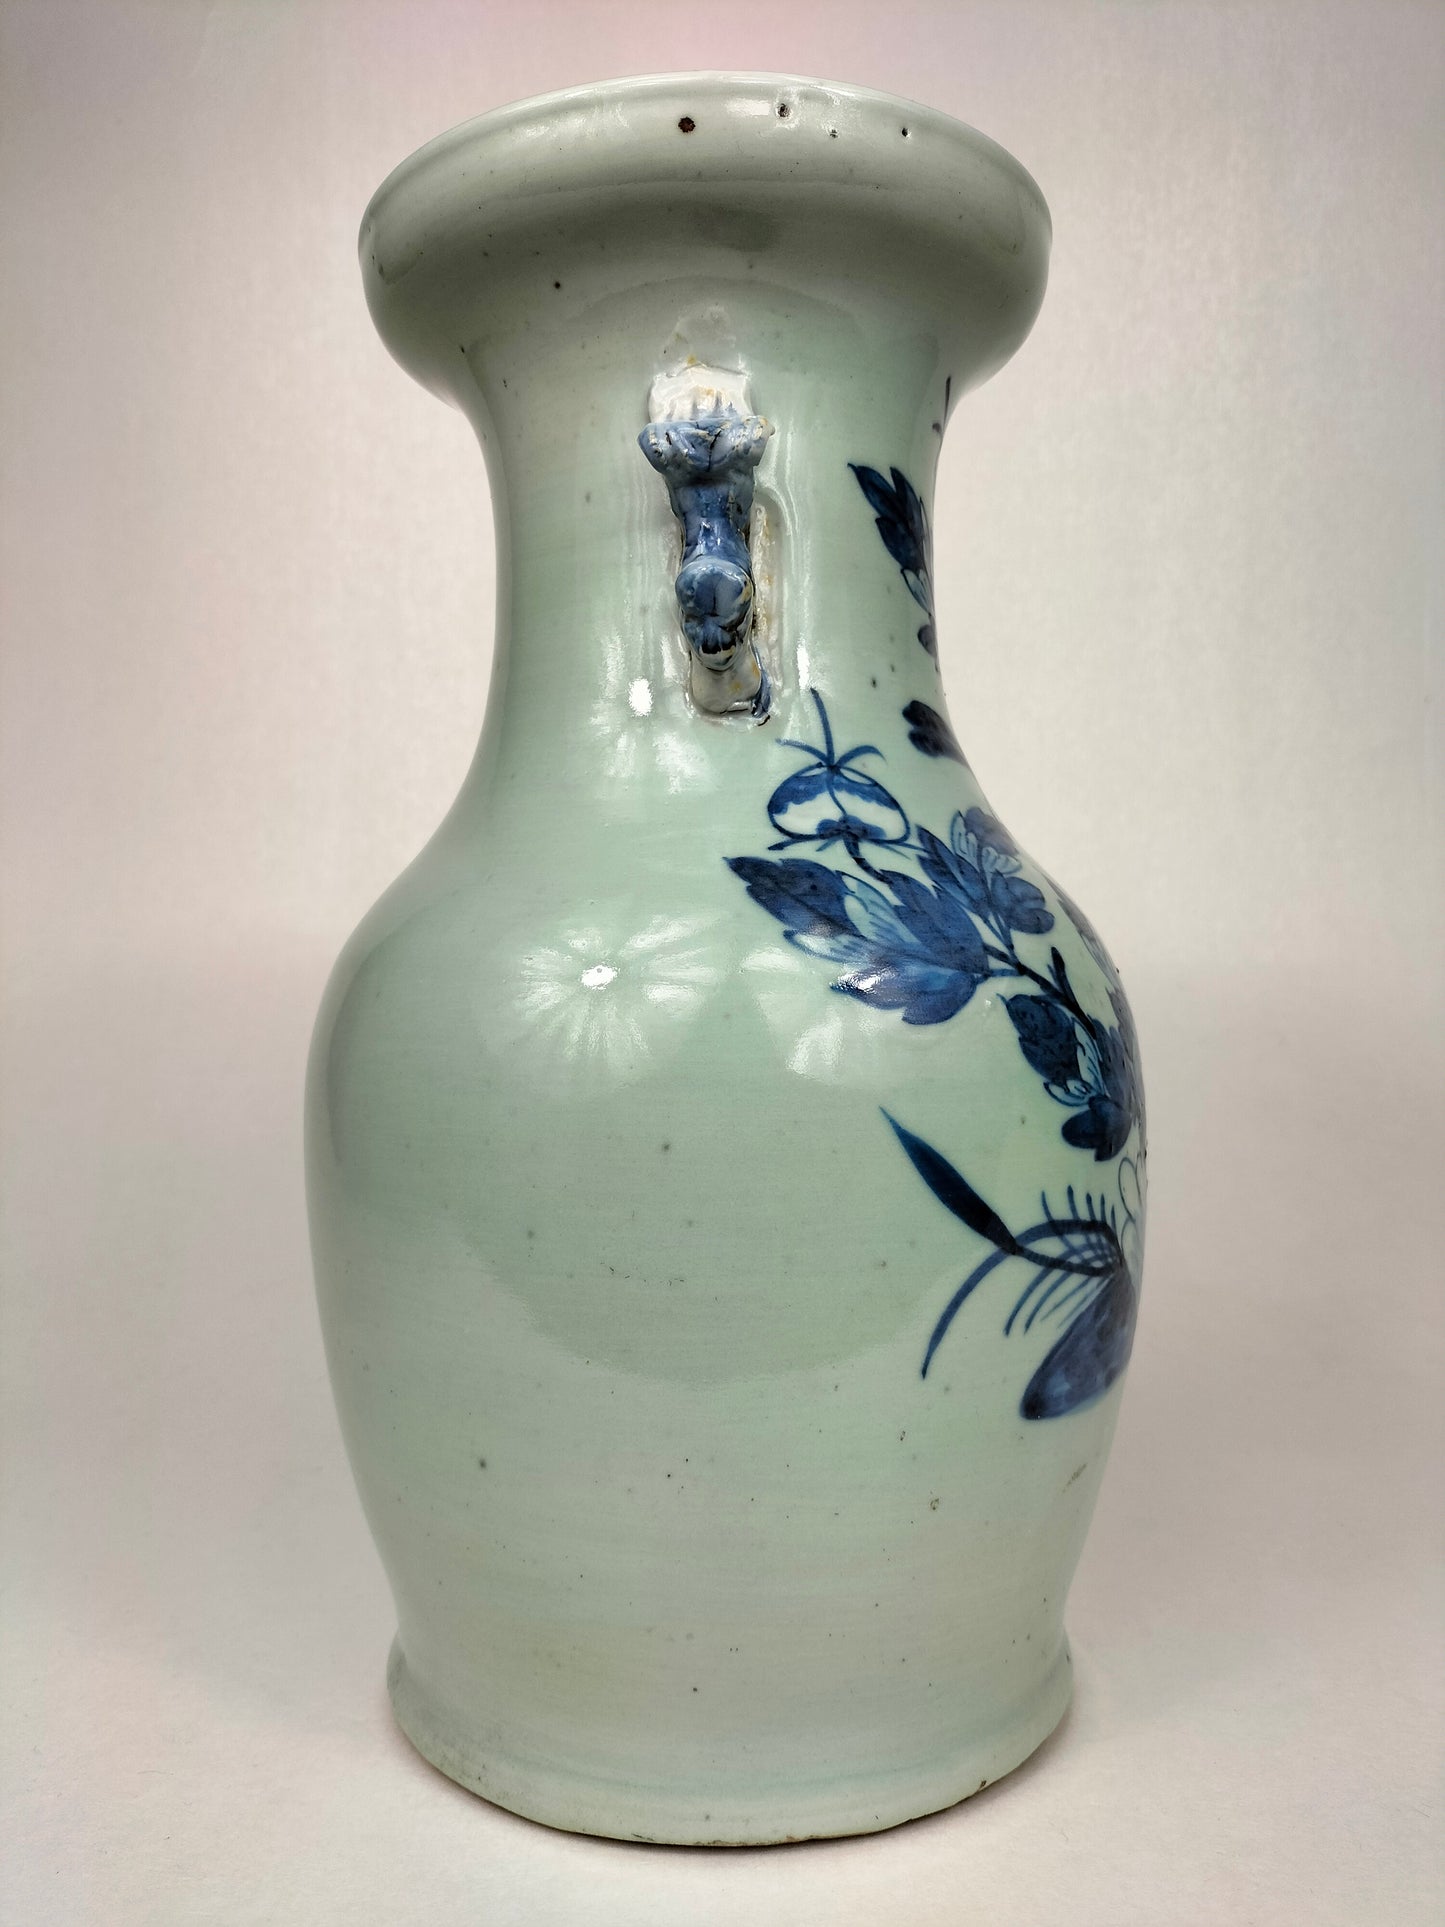 Ancien vase chinois céladon à décor d'oiseau et de fleurs // Dynastie Qing - 19e siècle